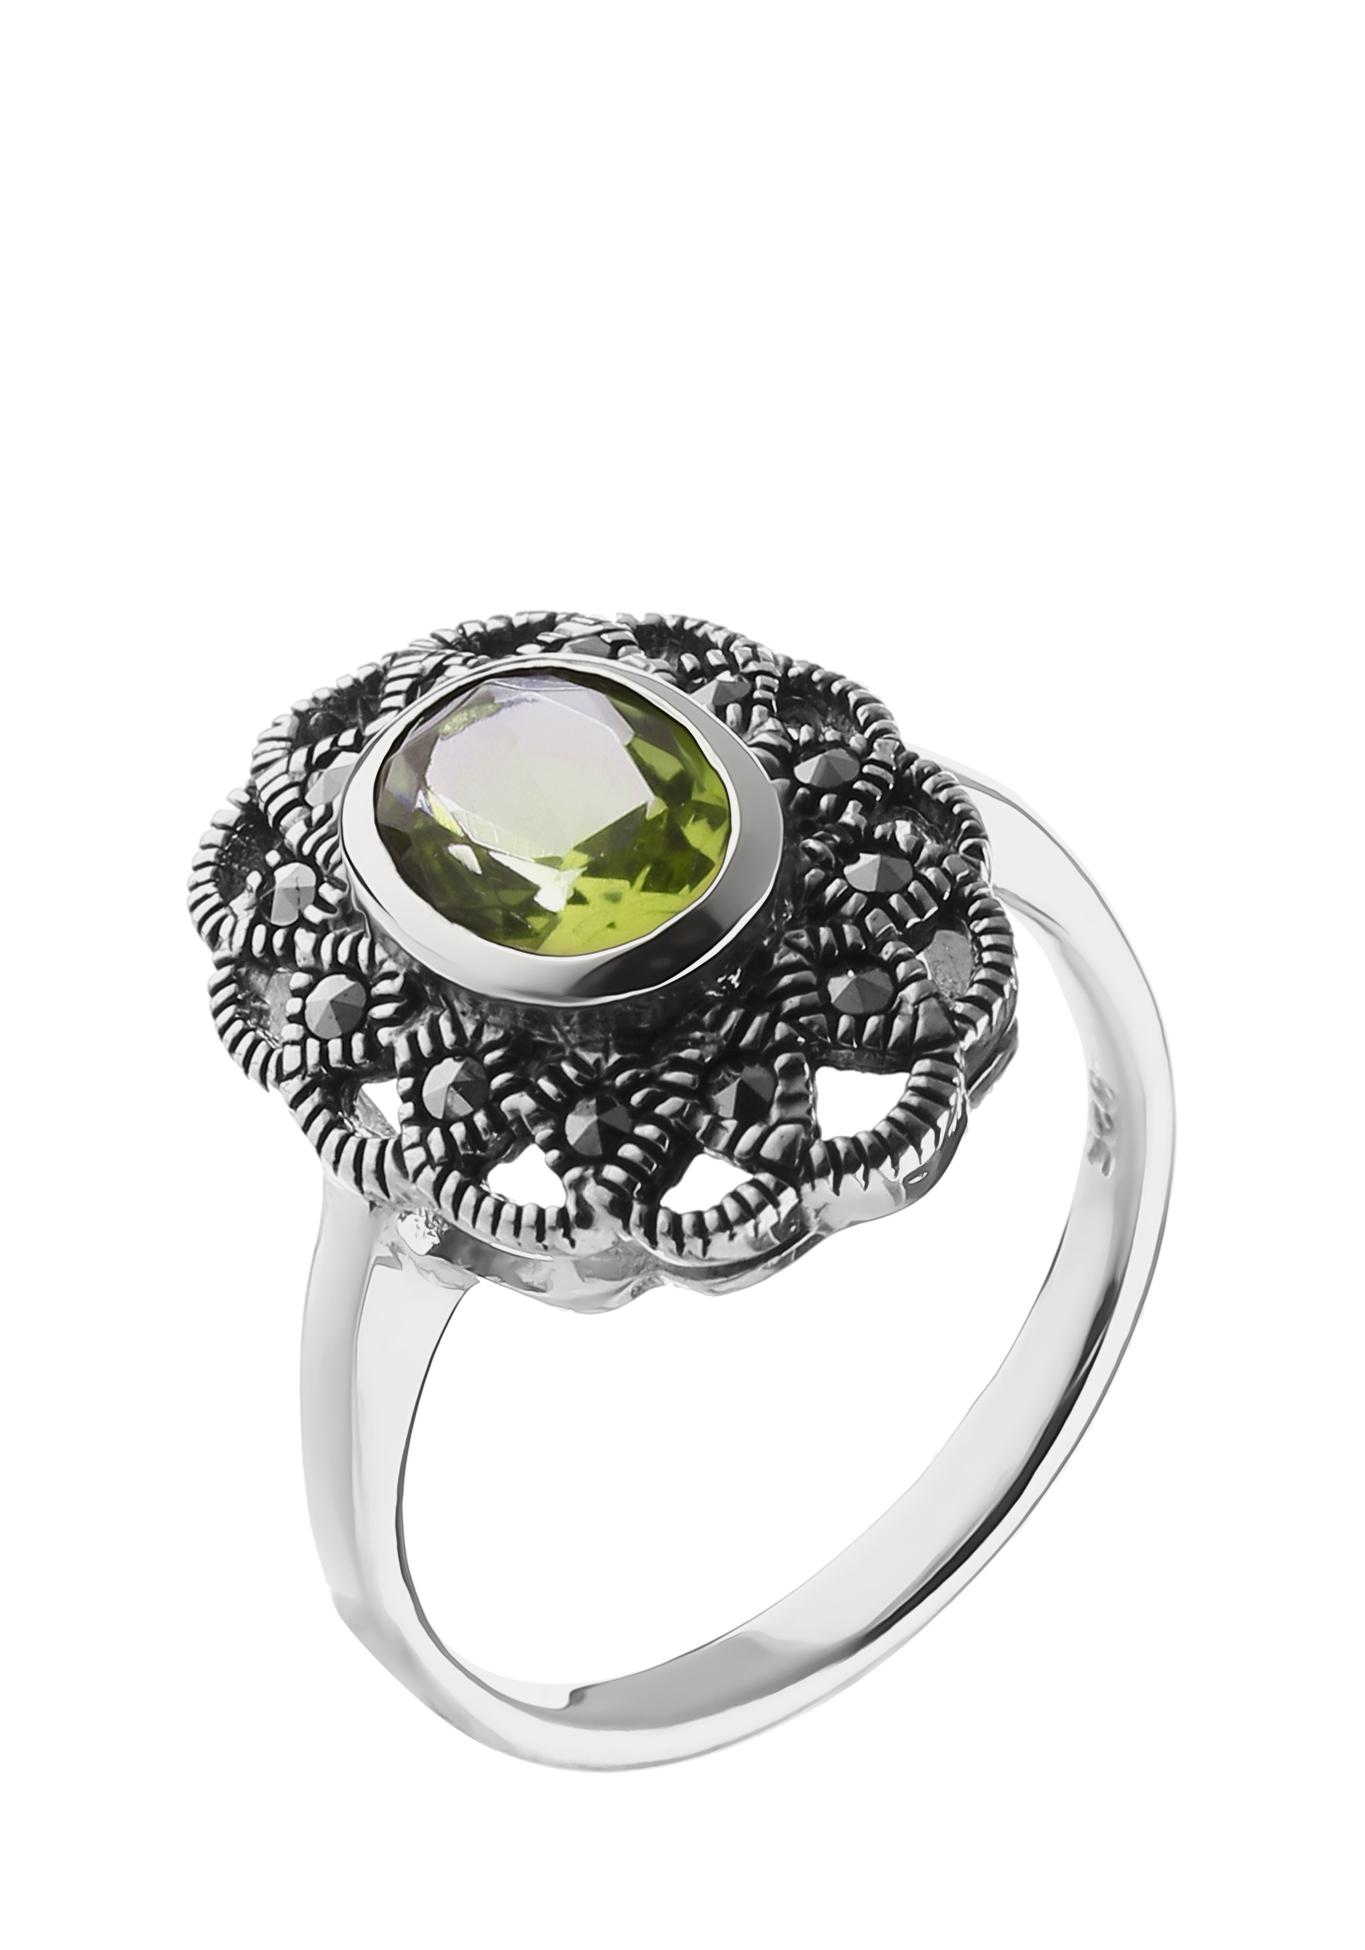 Серебряное кольцо  "Селения" Nouvelle, цвет зеленый, размер 17 перстень - фото 1